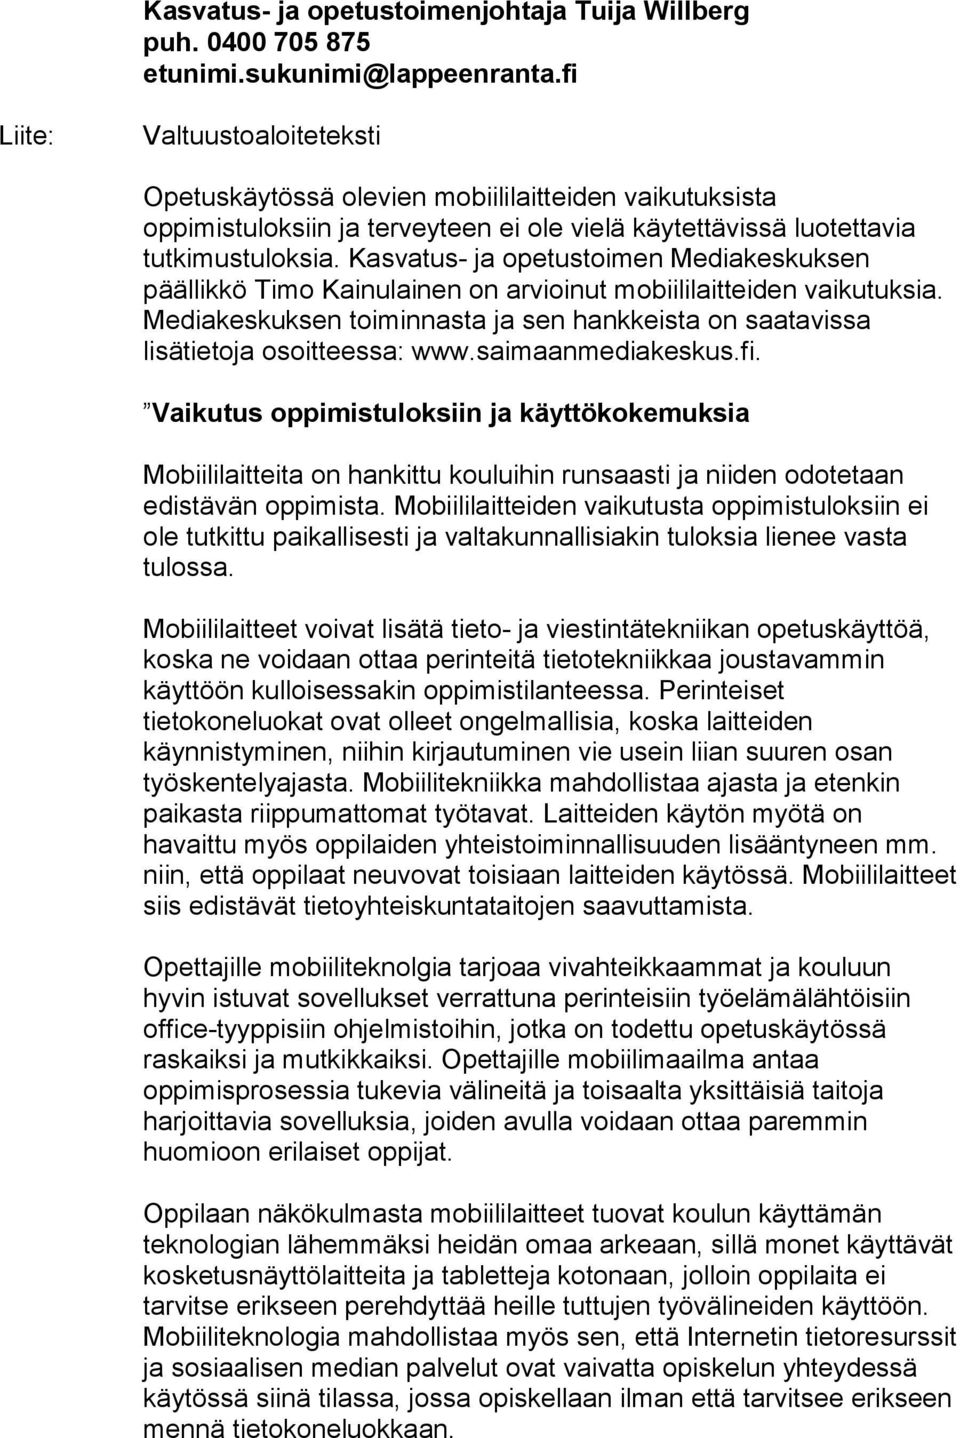 Kasvatus- ja opetustoimen Mediakeskuksen päällikkö Timo Kainulainen on arvioinut mobiililaitteiden vaikutuksia. Mediakeskuksen toiminnasta ja sen hankkeista on saatavissa lisätietoja osoitteessa: www.